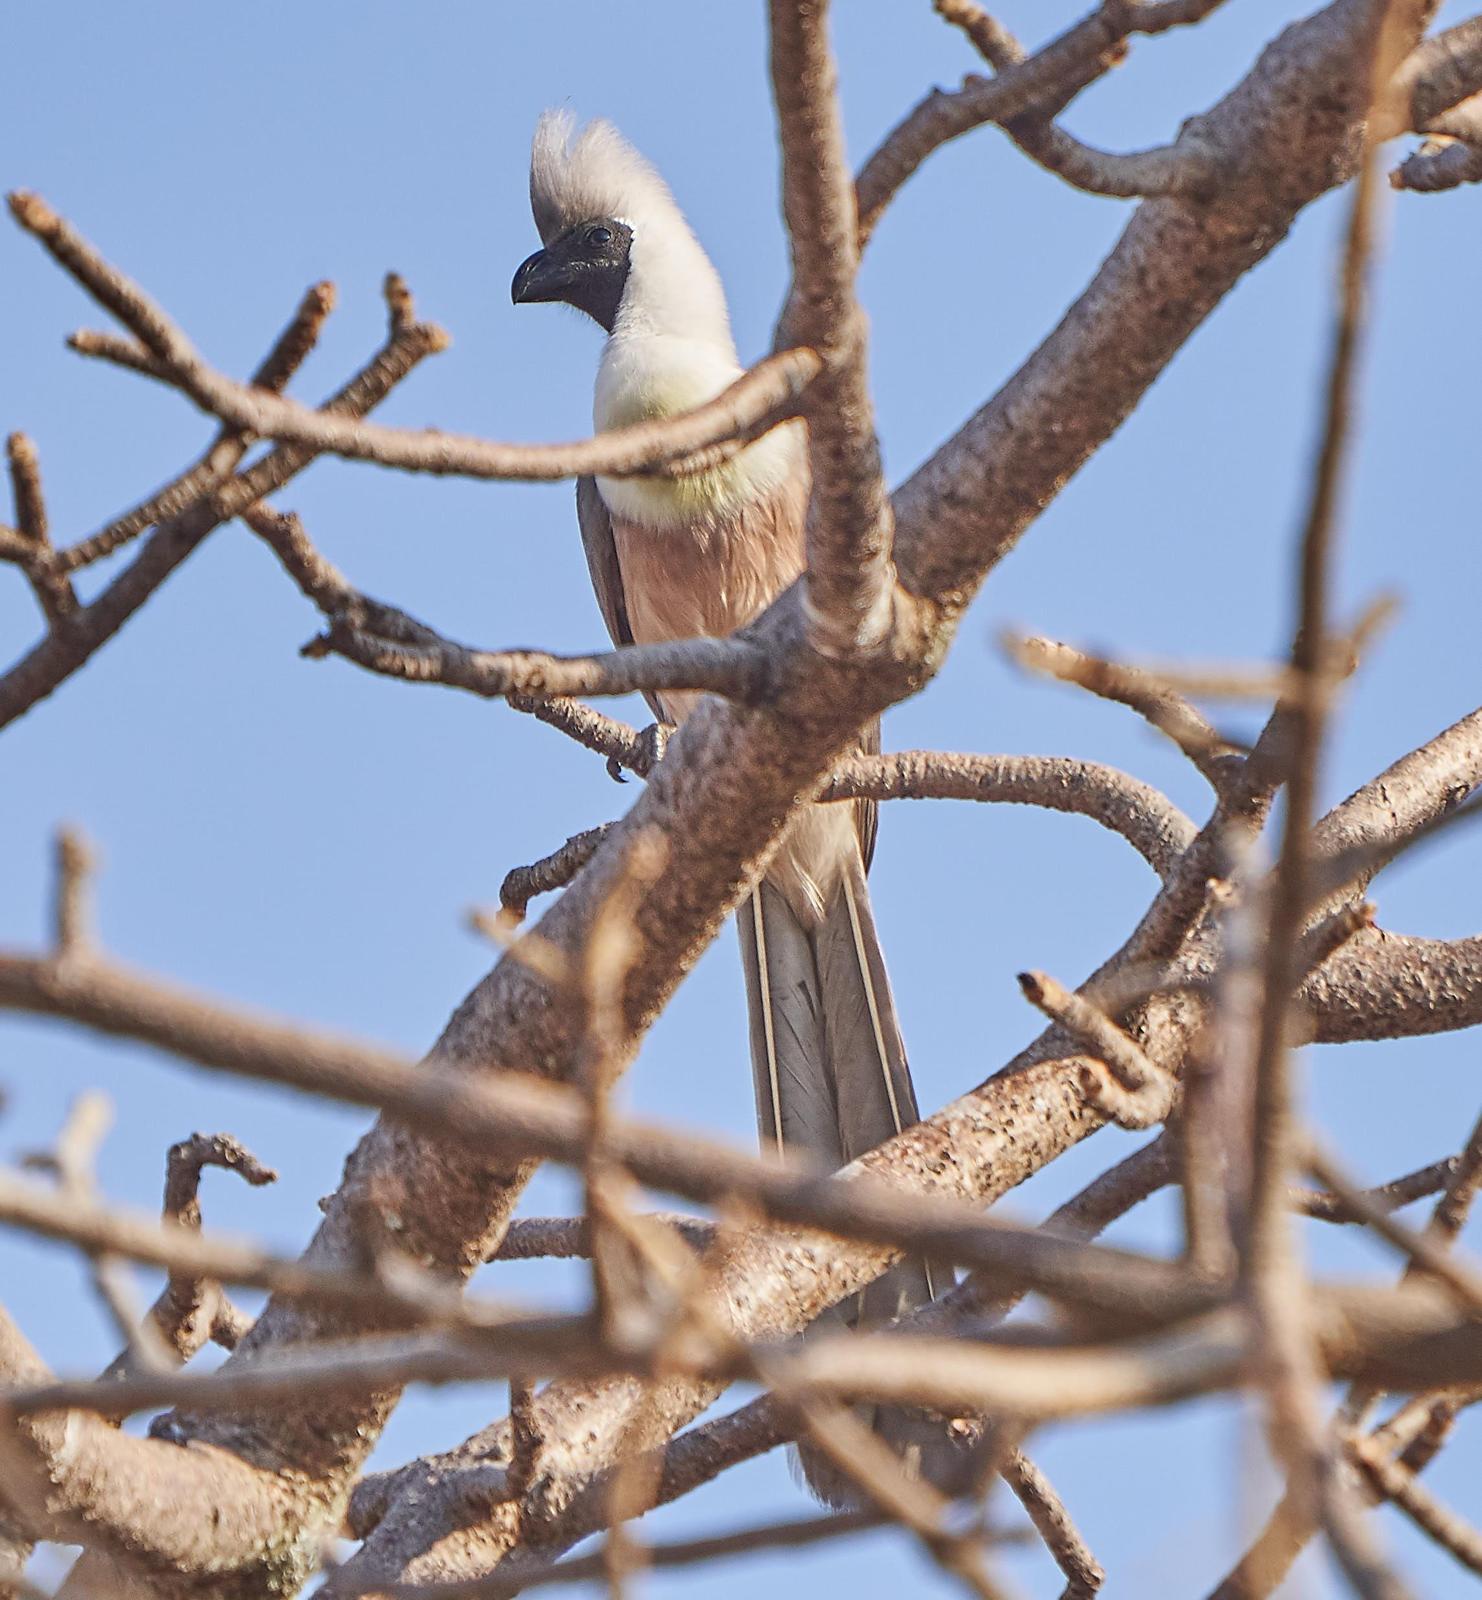 Bare-faced Go-away-bird Photo by Steven Cheong